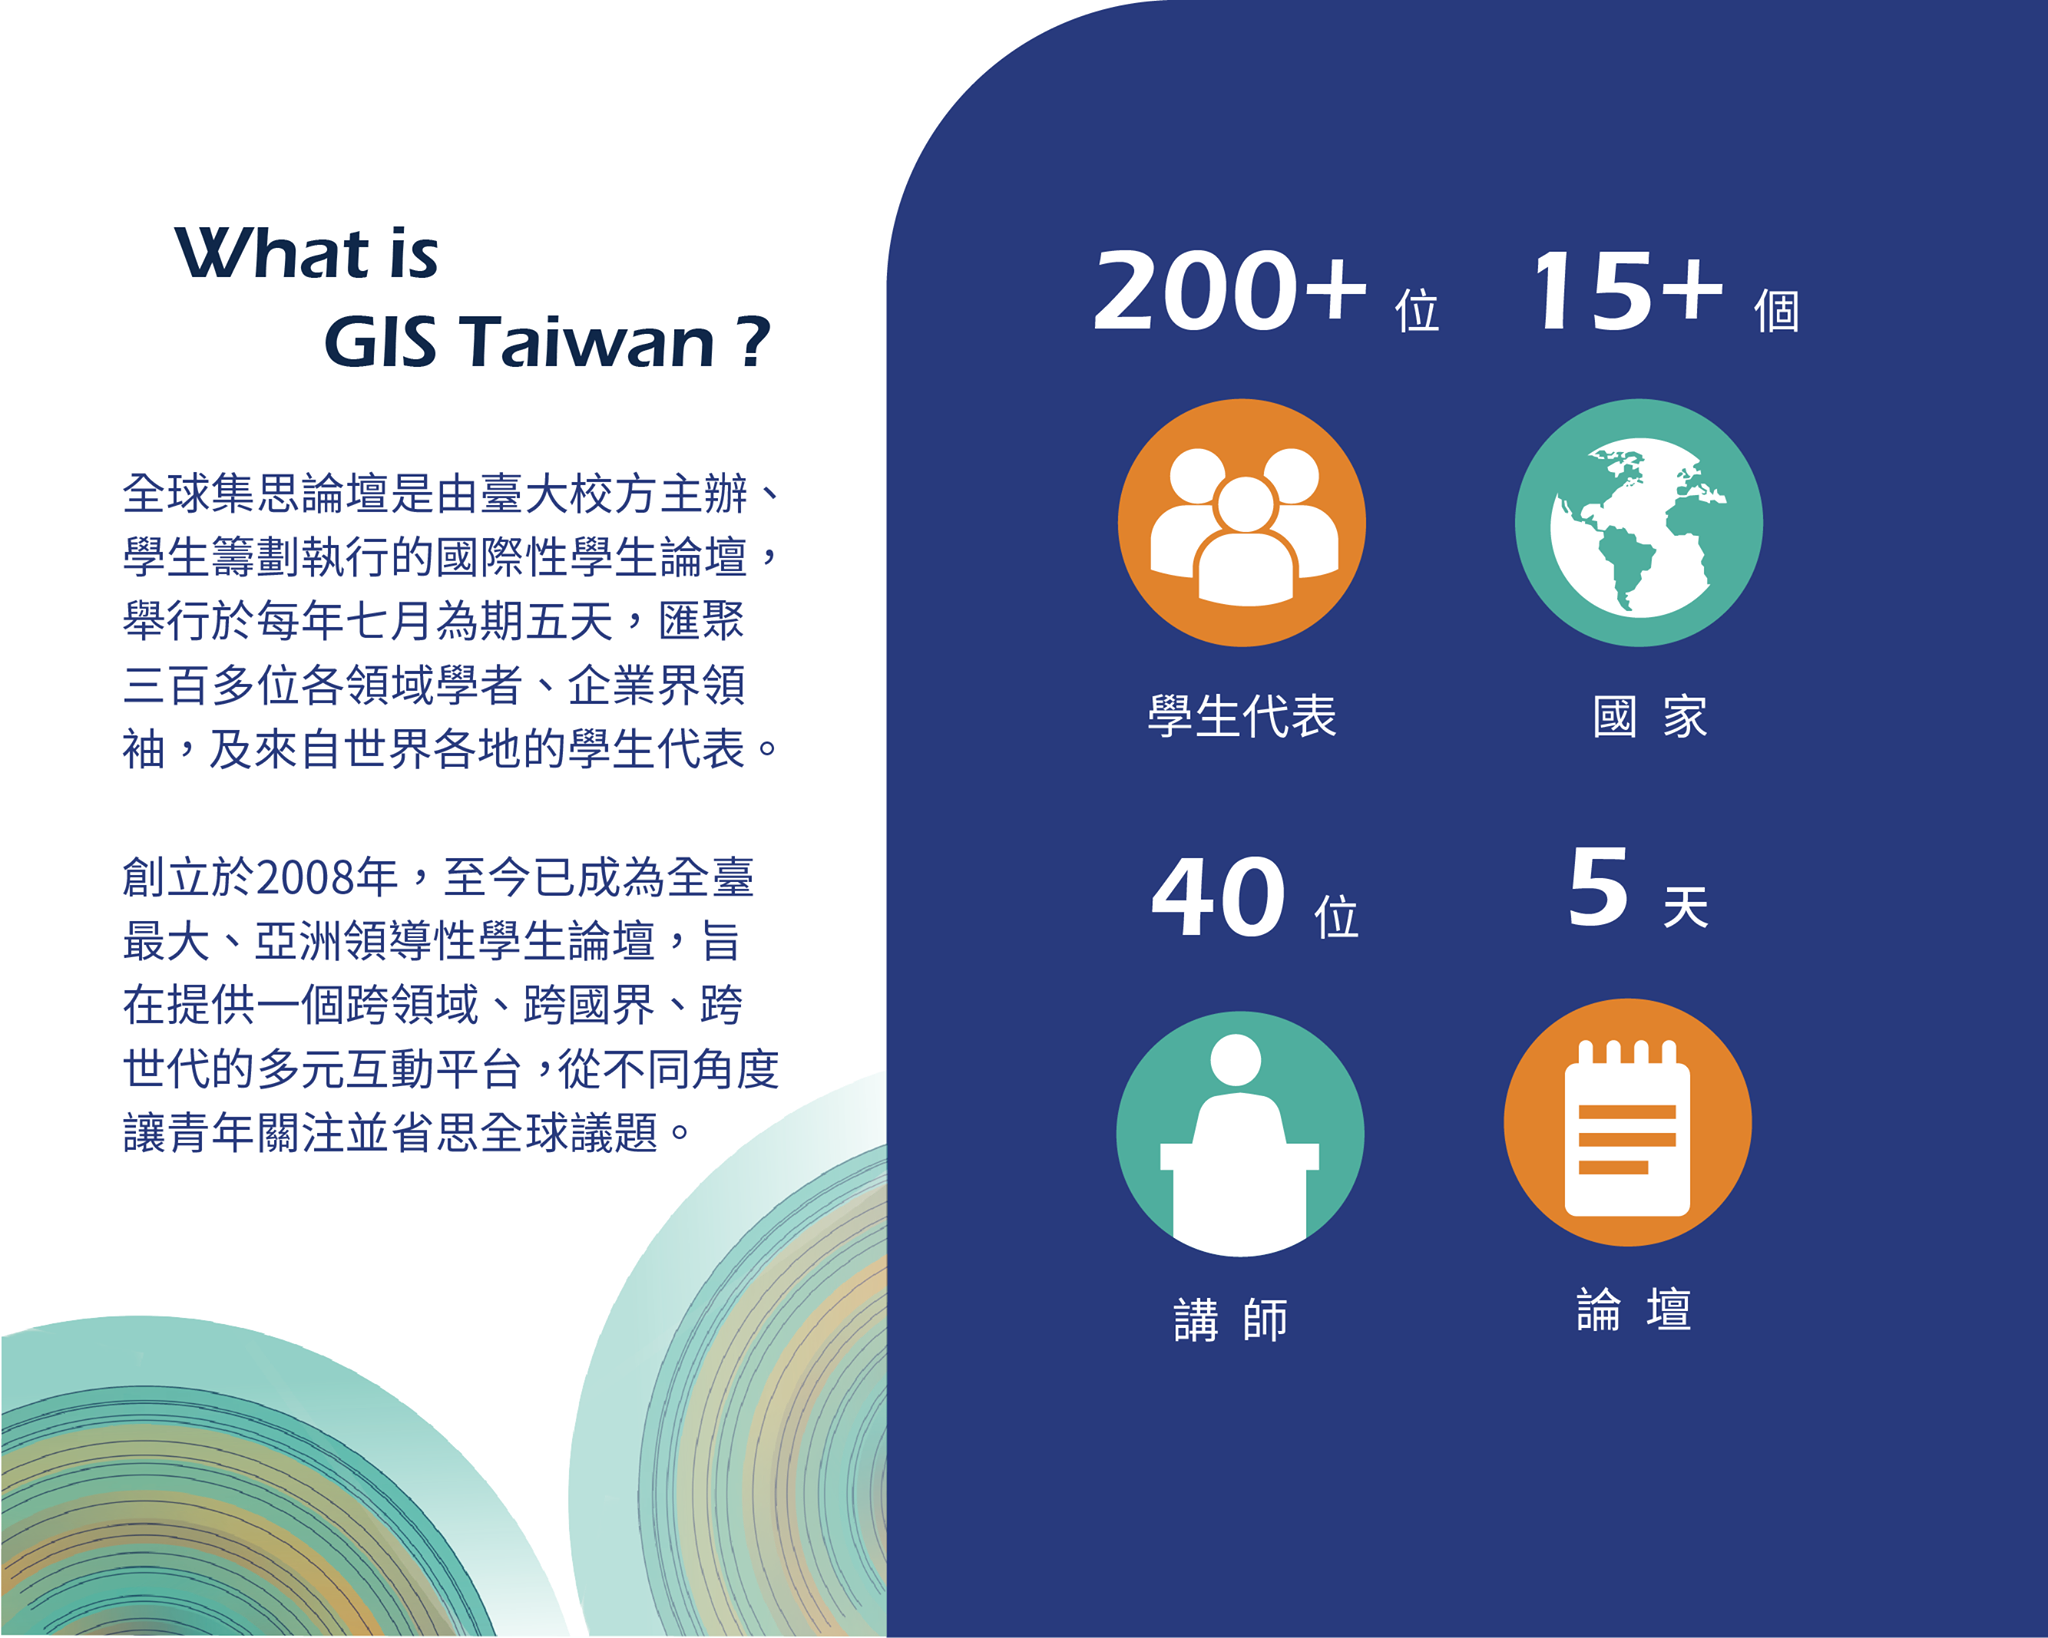 〔GIS Taiwan全球集思論壇〕給自己一個與企業面對面的機會-GIS Taiwan